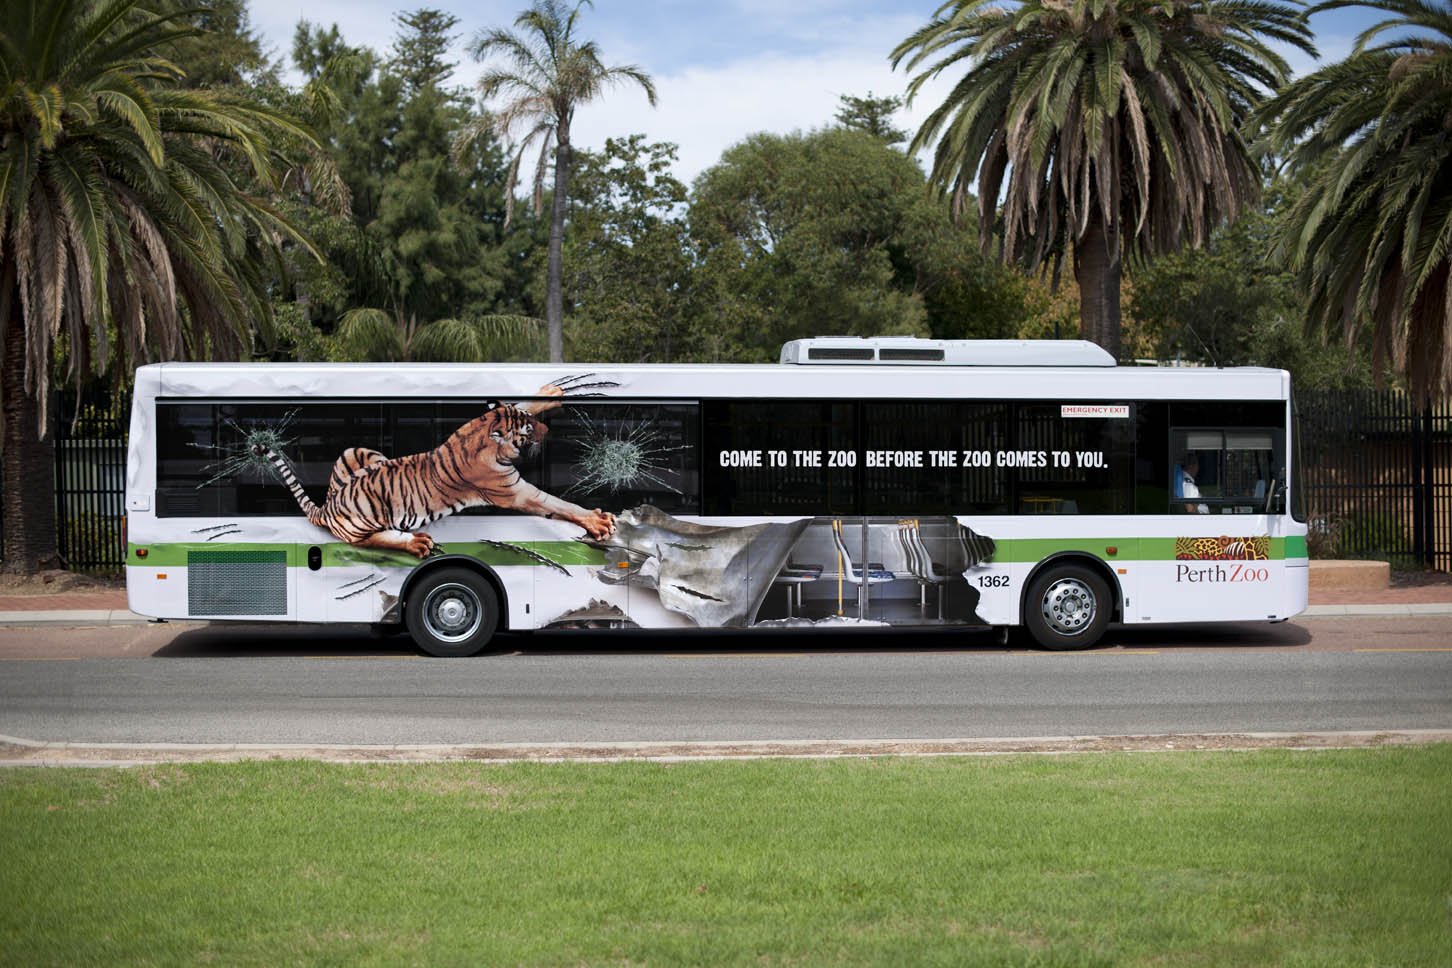 Advertising images. Реклама на автобусах. Автобус. Креативная реклама на автобусах. Брендирование автобуса.